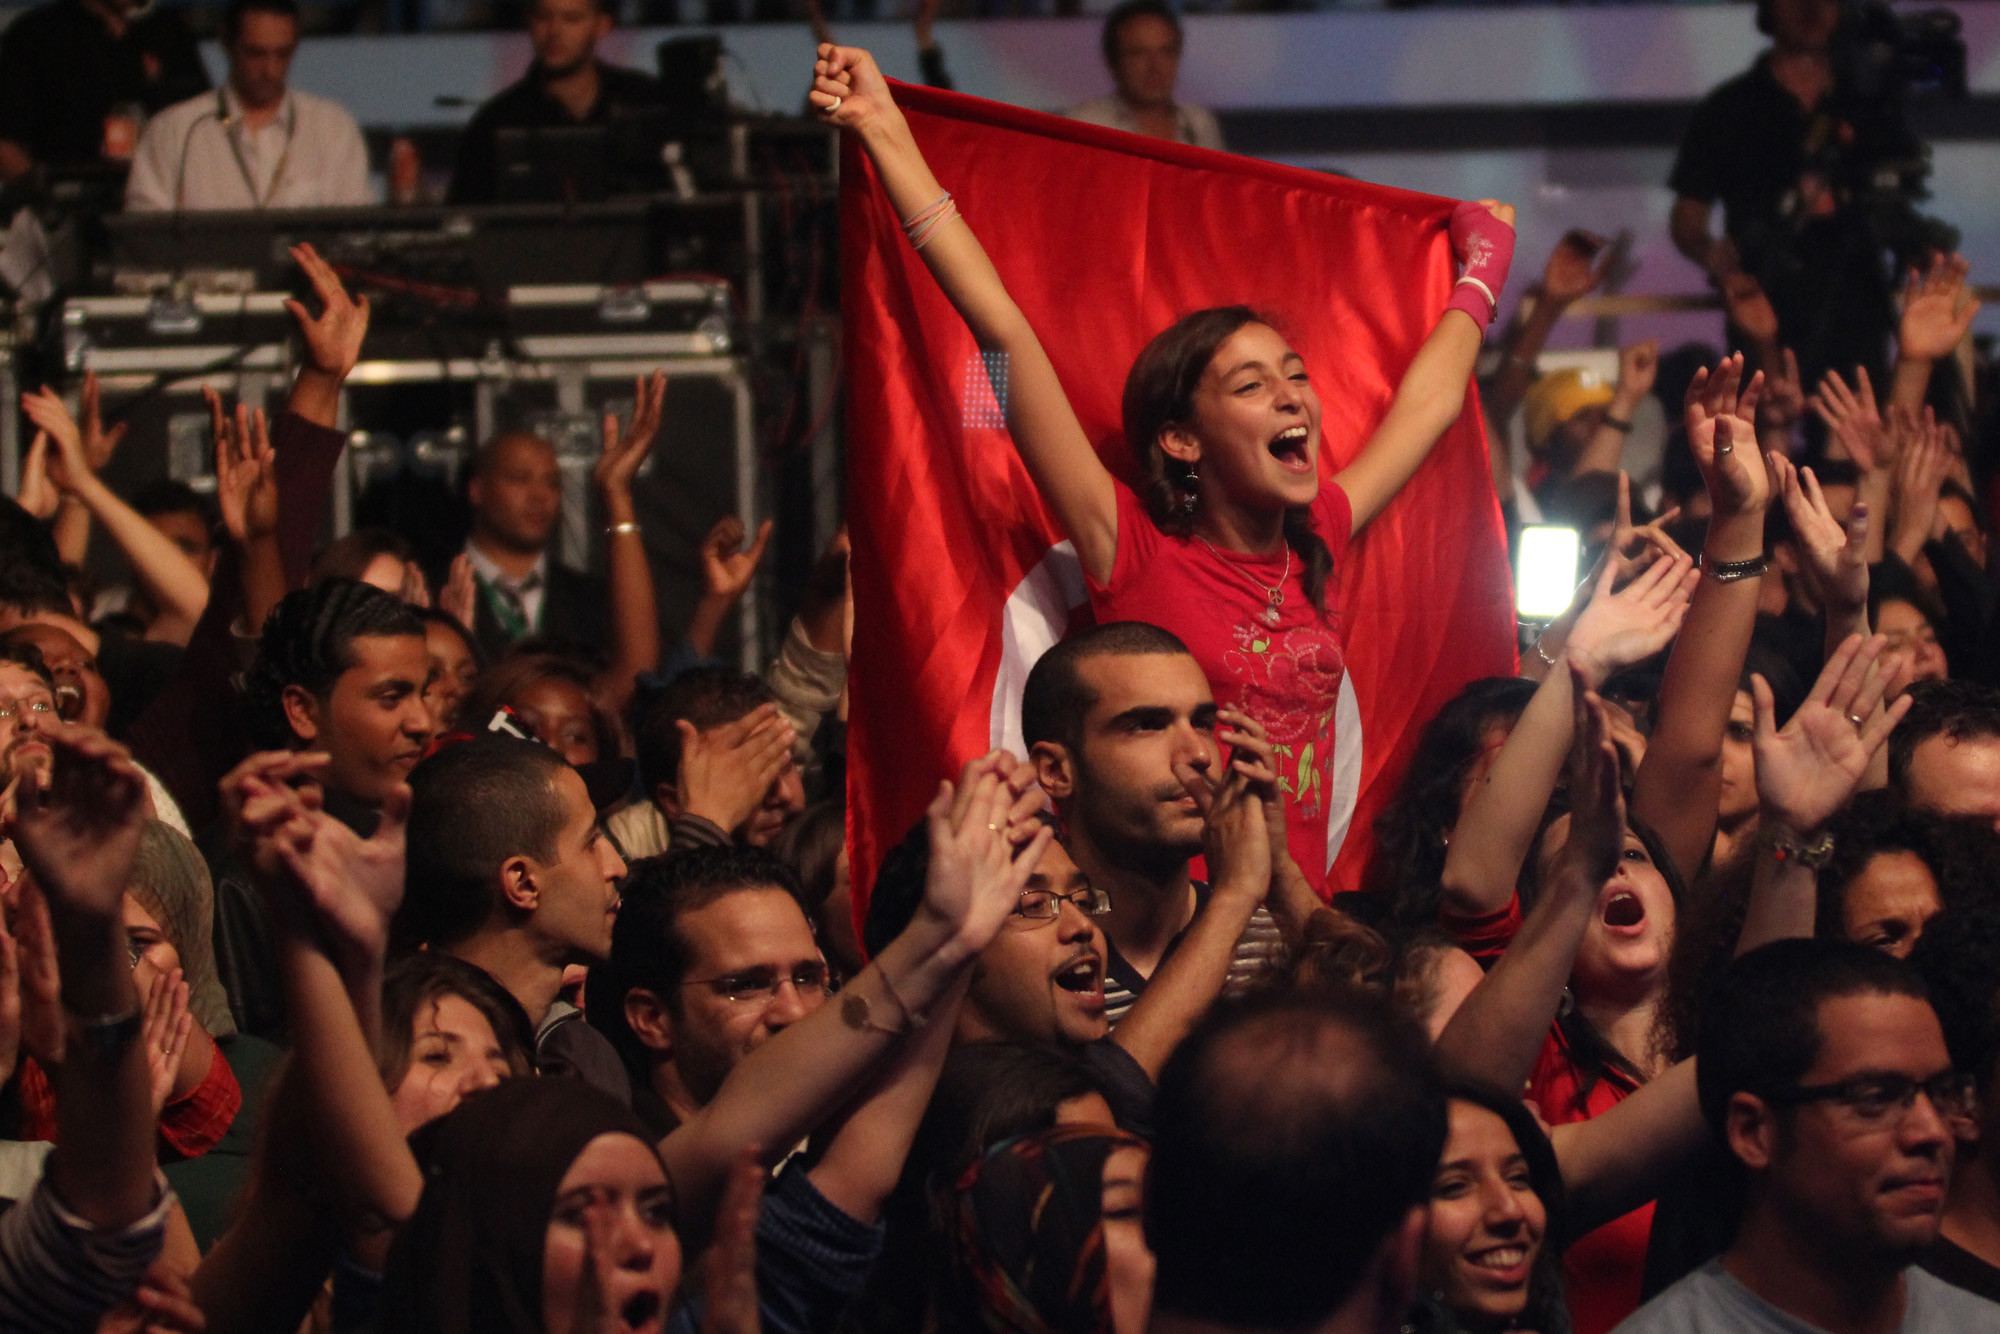 En stor folkemengde heier og ser glade ut. En dame veiver den tunisiske flagget bak seg.